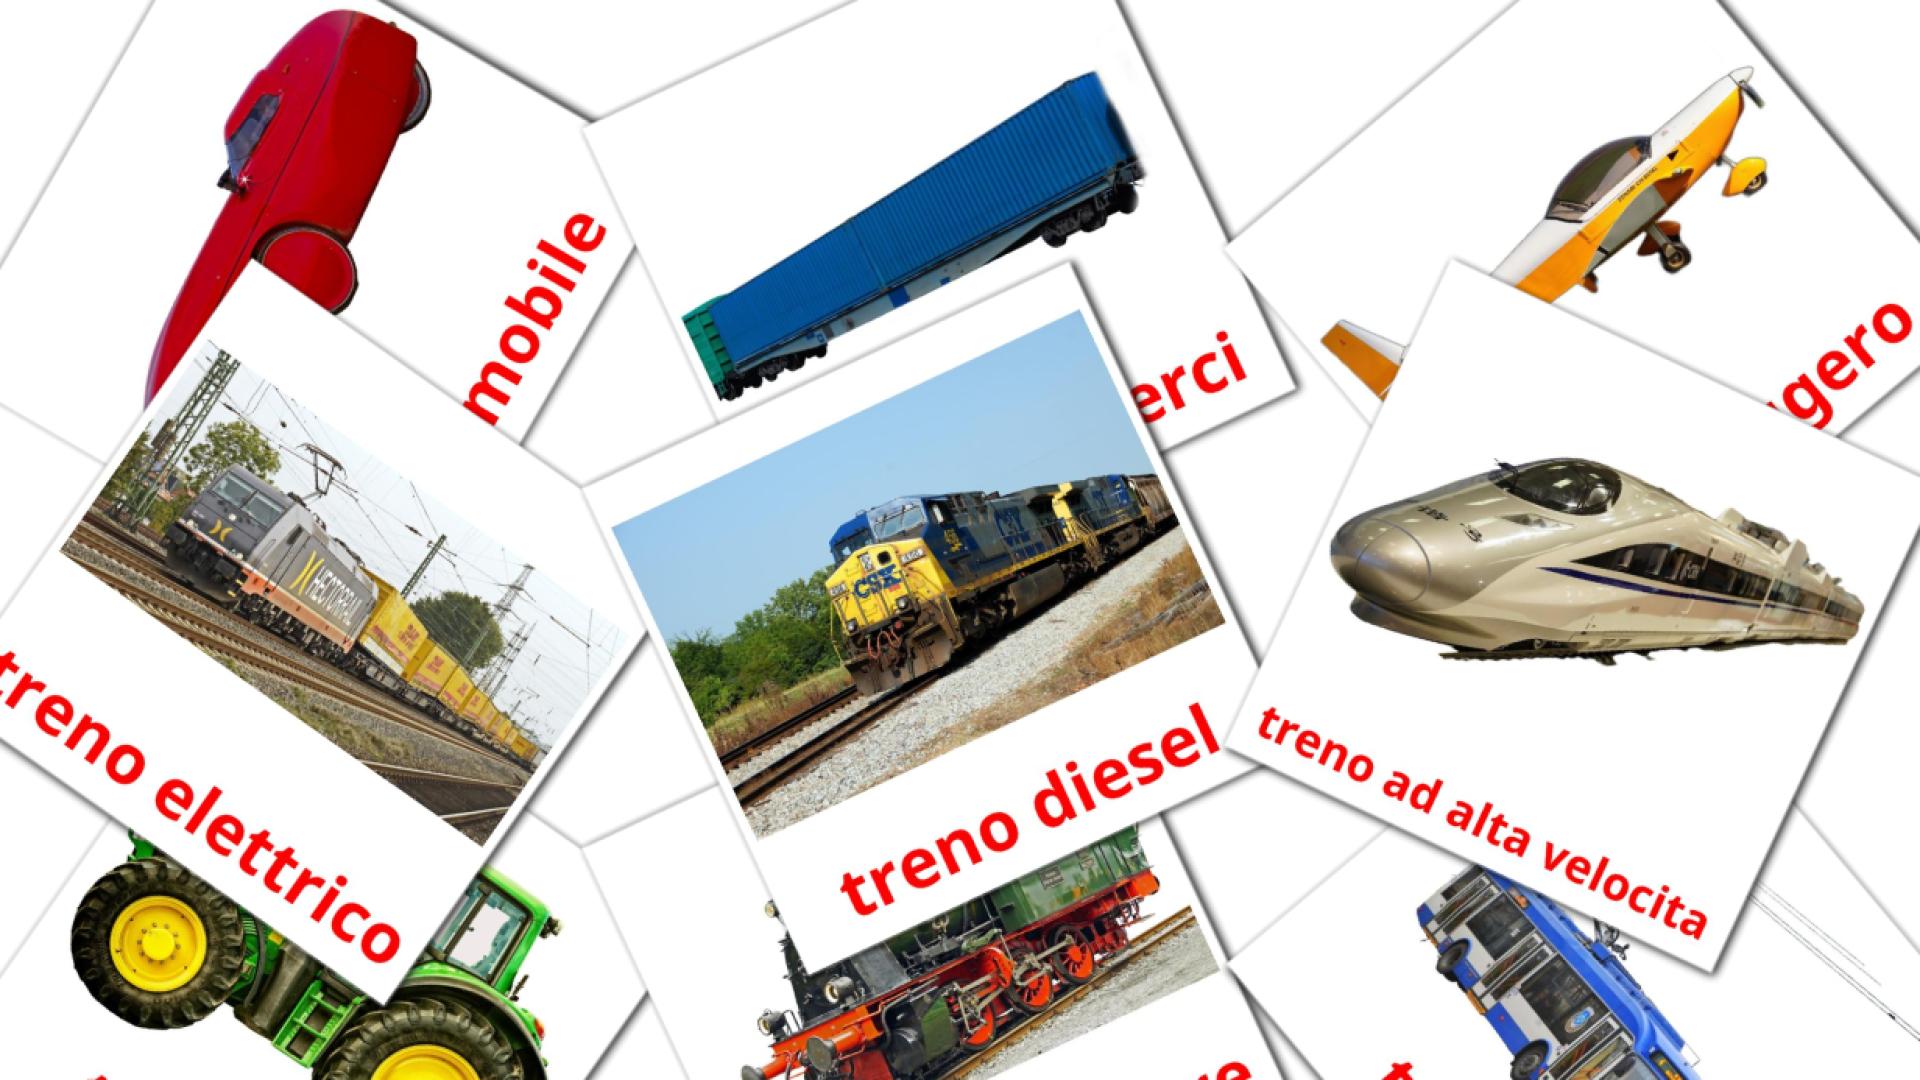 Trasporto italian vocabulary flashcards